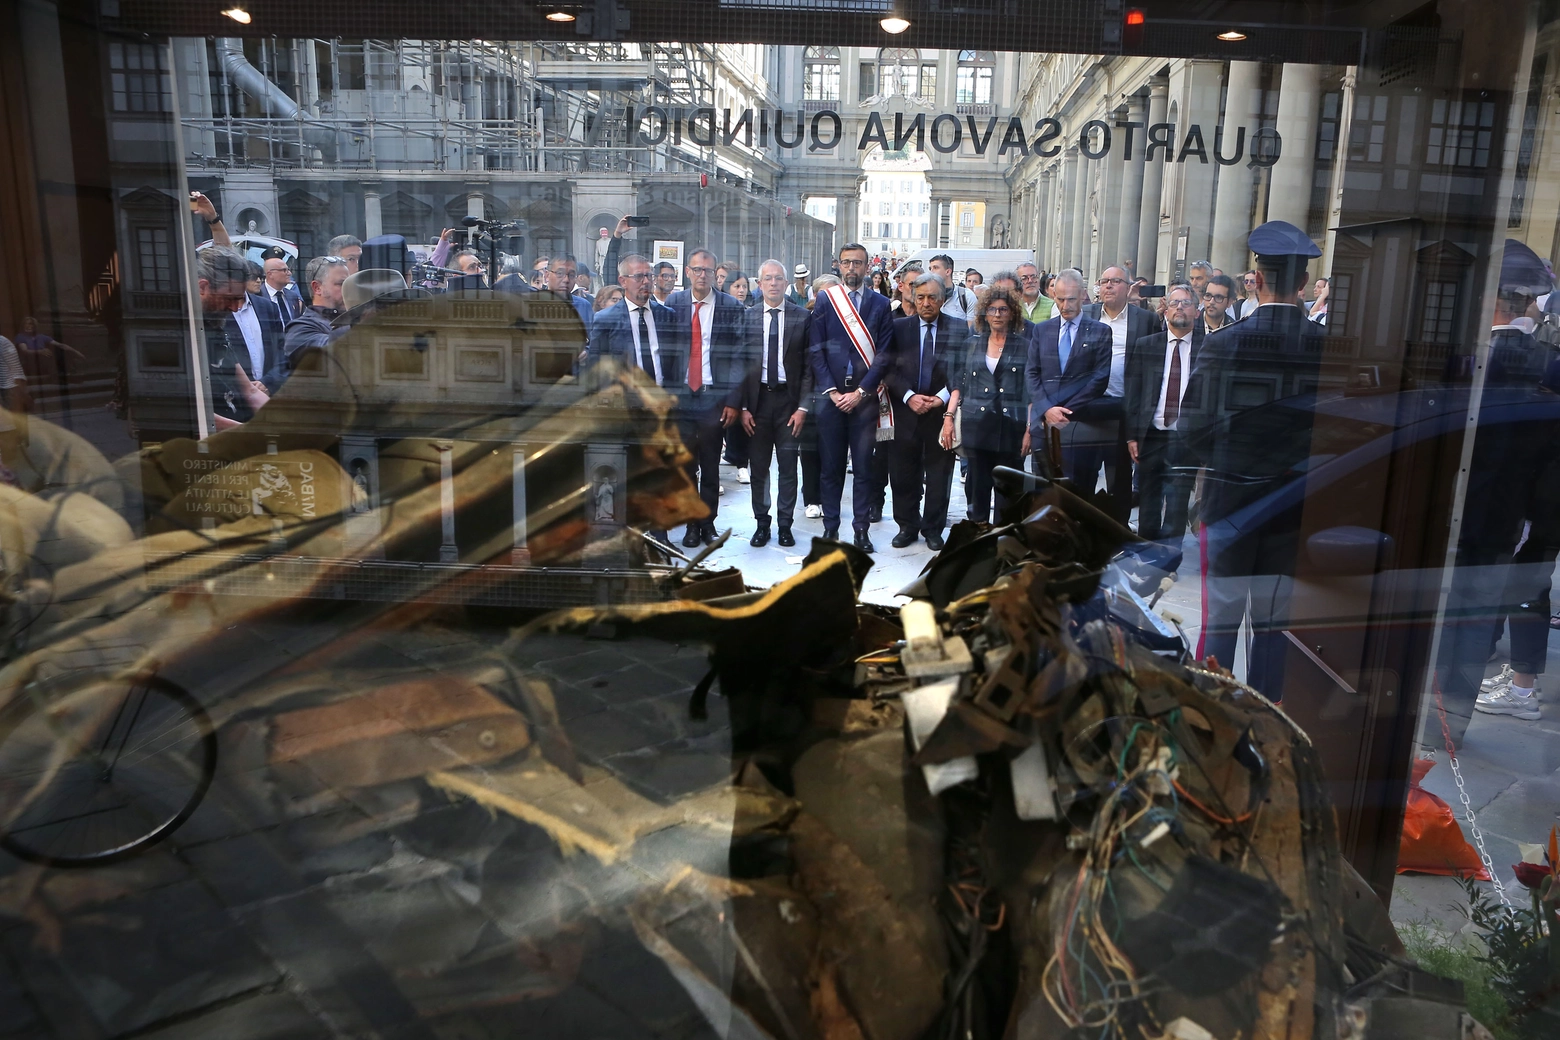 La commemorazione di fronte ai resti dell'auto della scorta (New Press Photo)